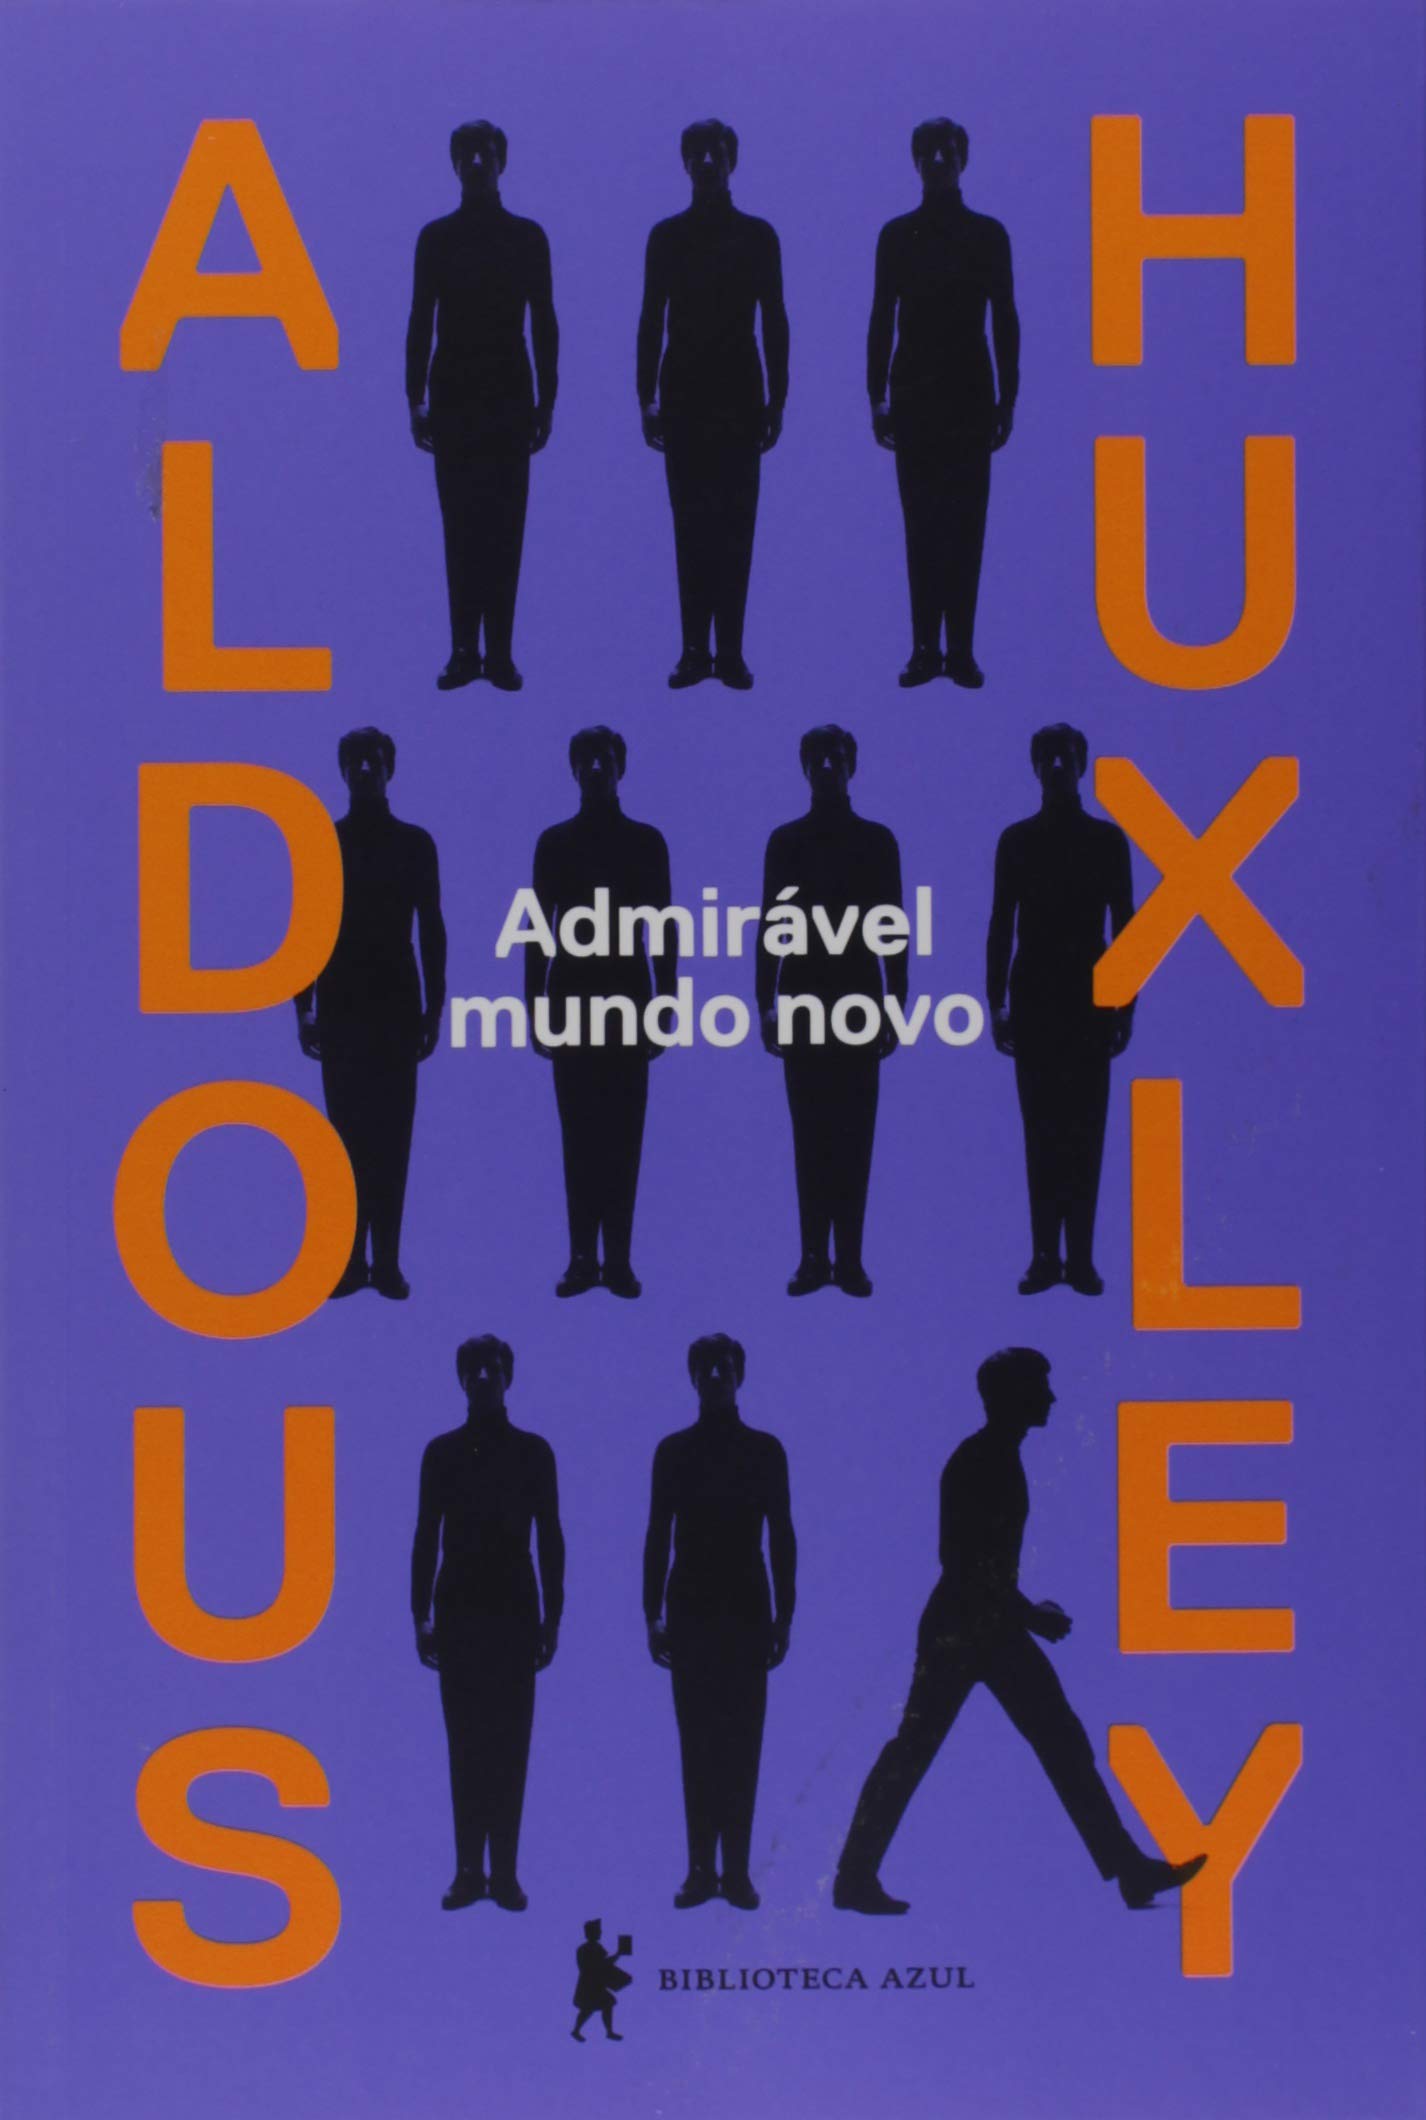 Aldous Huxley: Admirável mundo novo (Português language, 2014, Biblioteca Azul)